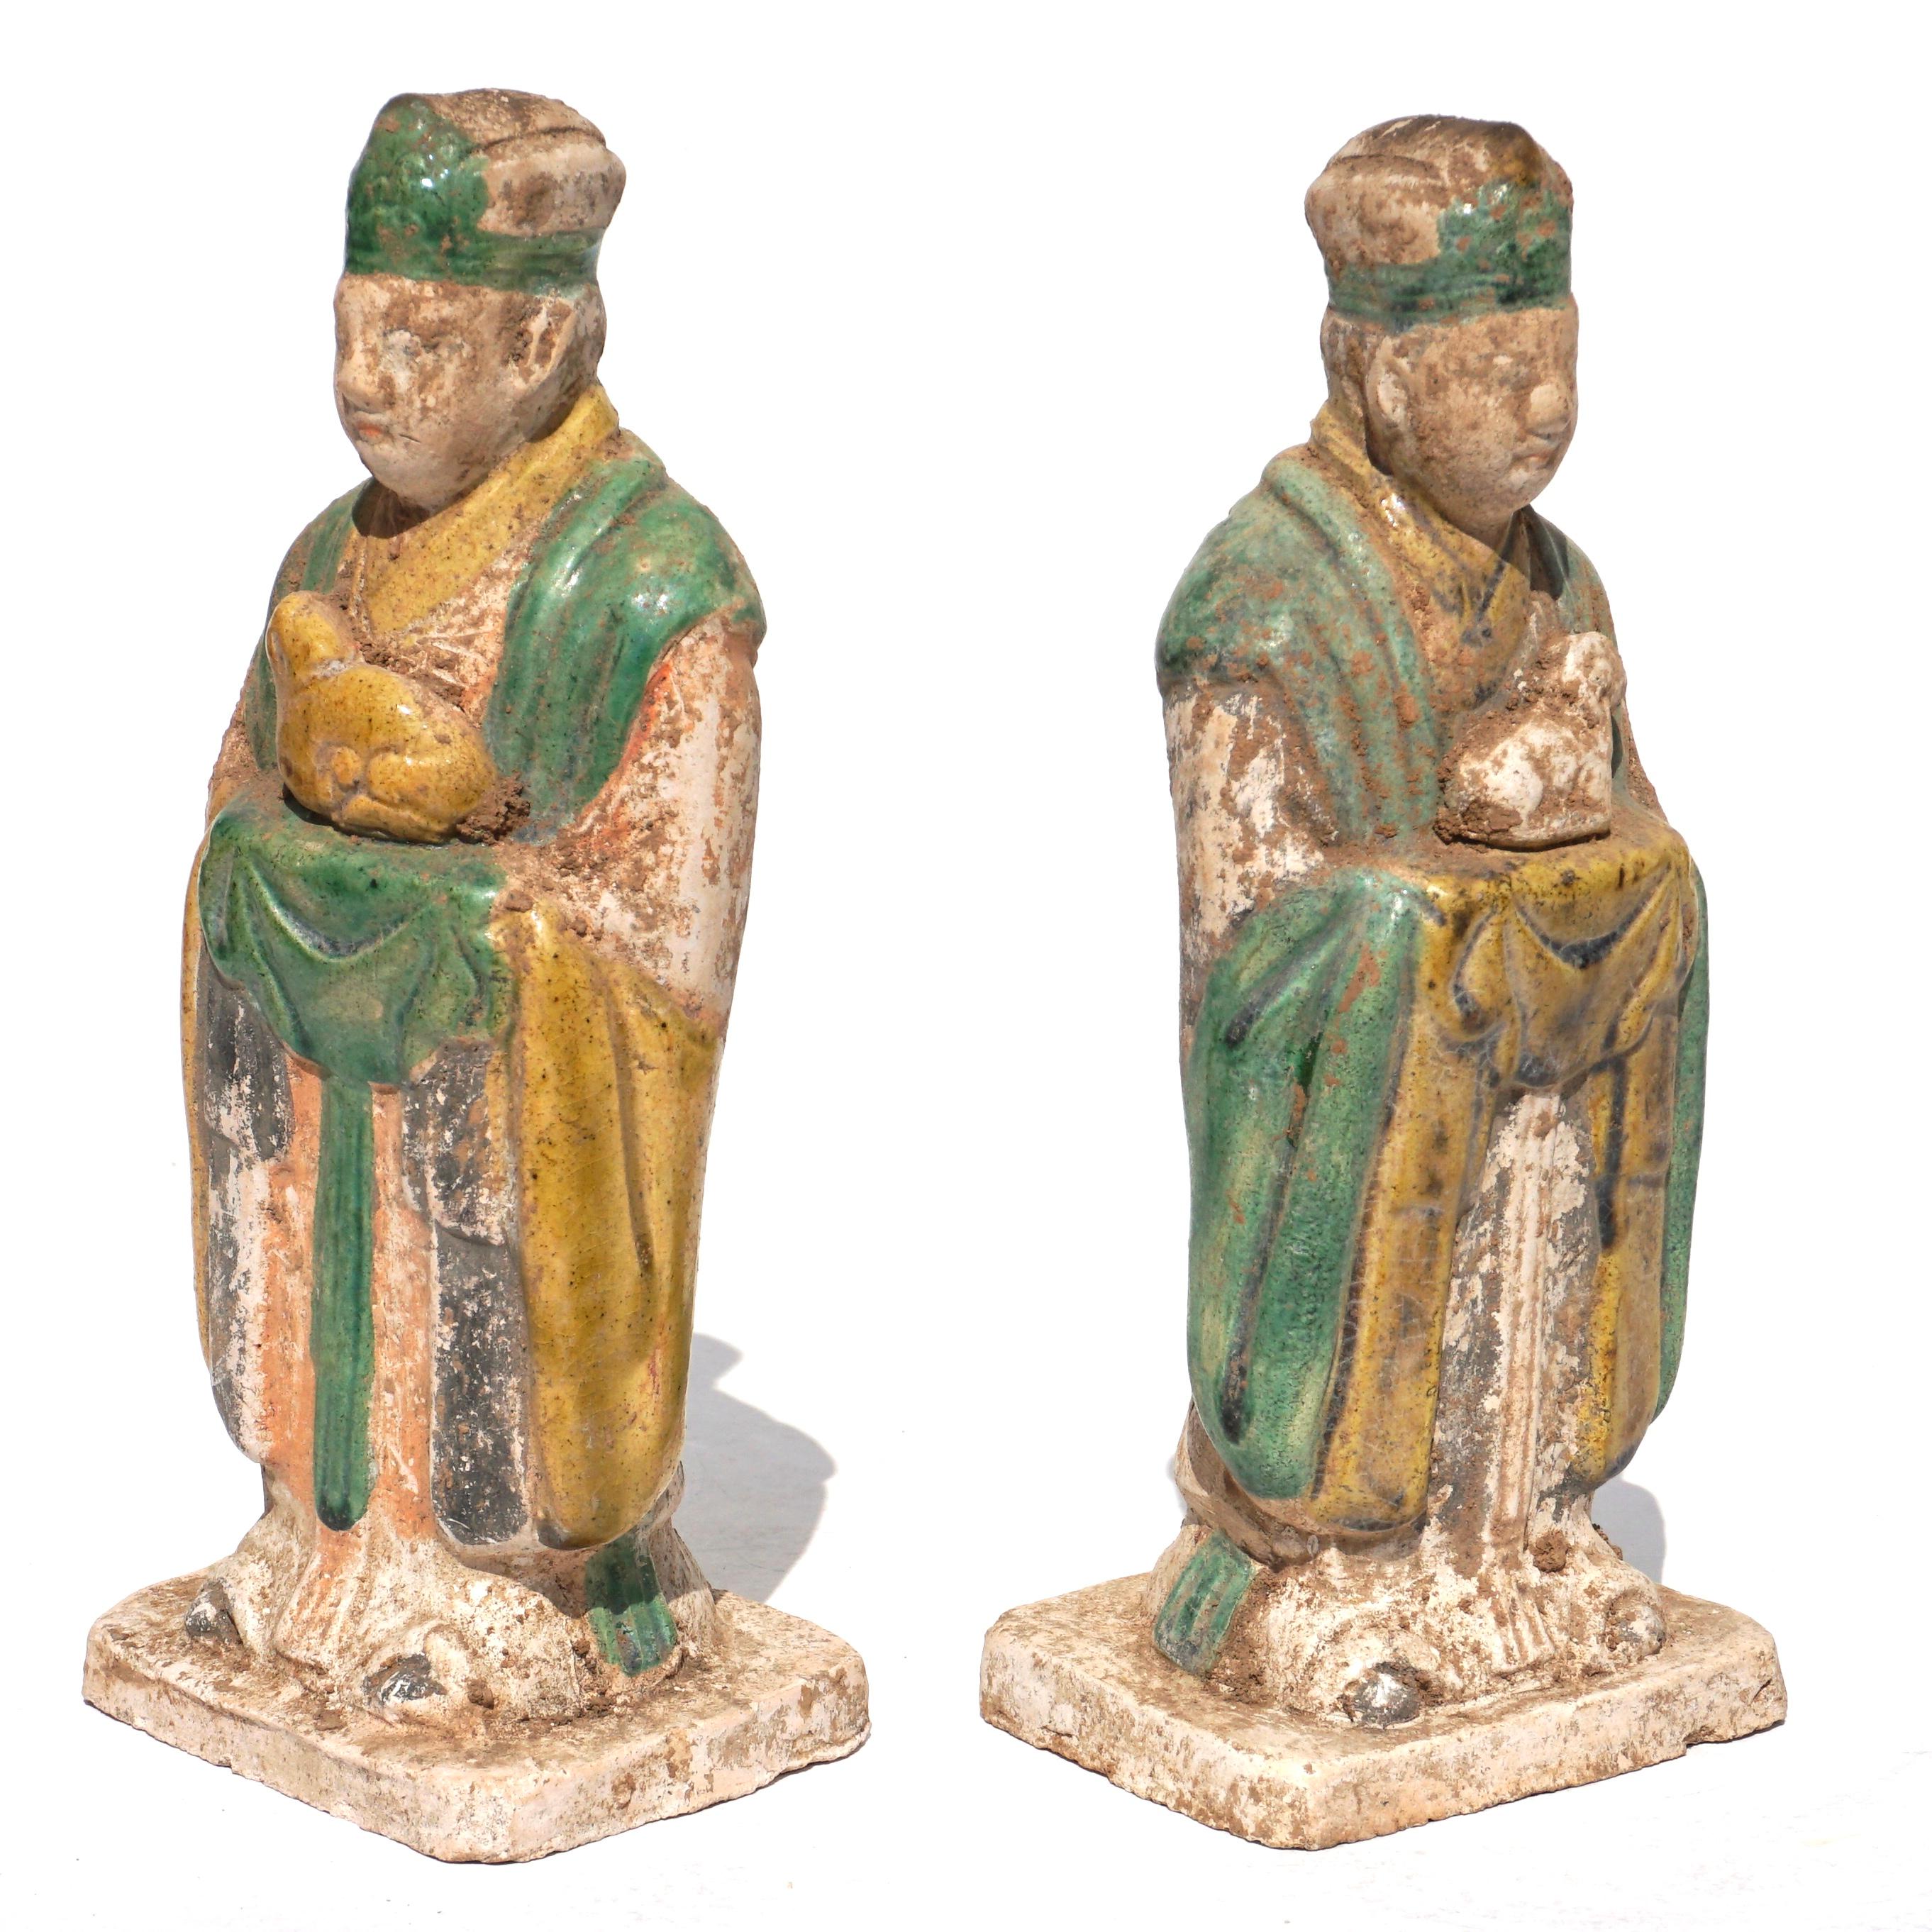 Ca. 1368-1644 AD. Ming-Dynastie. 

Ein fabelhaftes Set aus zwei glasierten Zodiac-Figuren aus Keramik. Sie trugen lange, drapierte Kleider in satten Grün-, Gelb- und Orangetönen. Die Tiere des chinesischen Zodiacs - Ratte, Ochse, Tiger, Kaninchen,